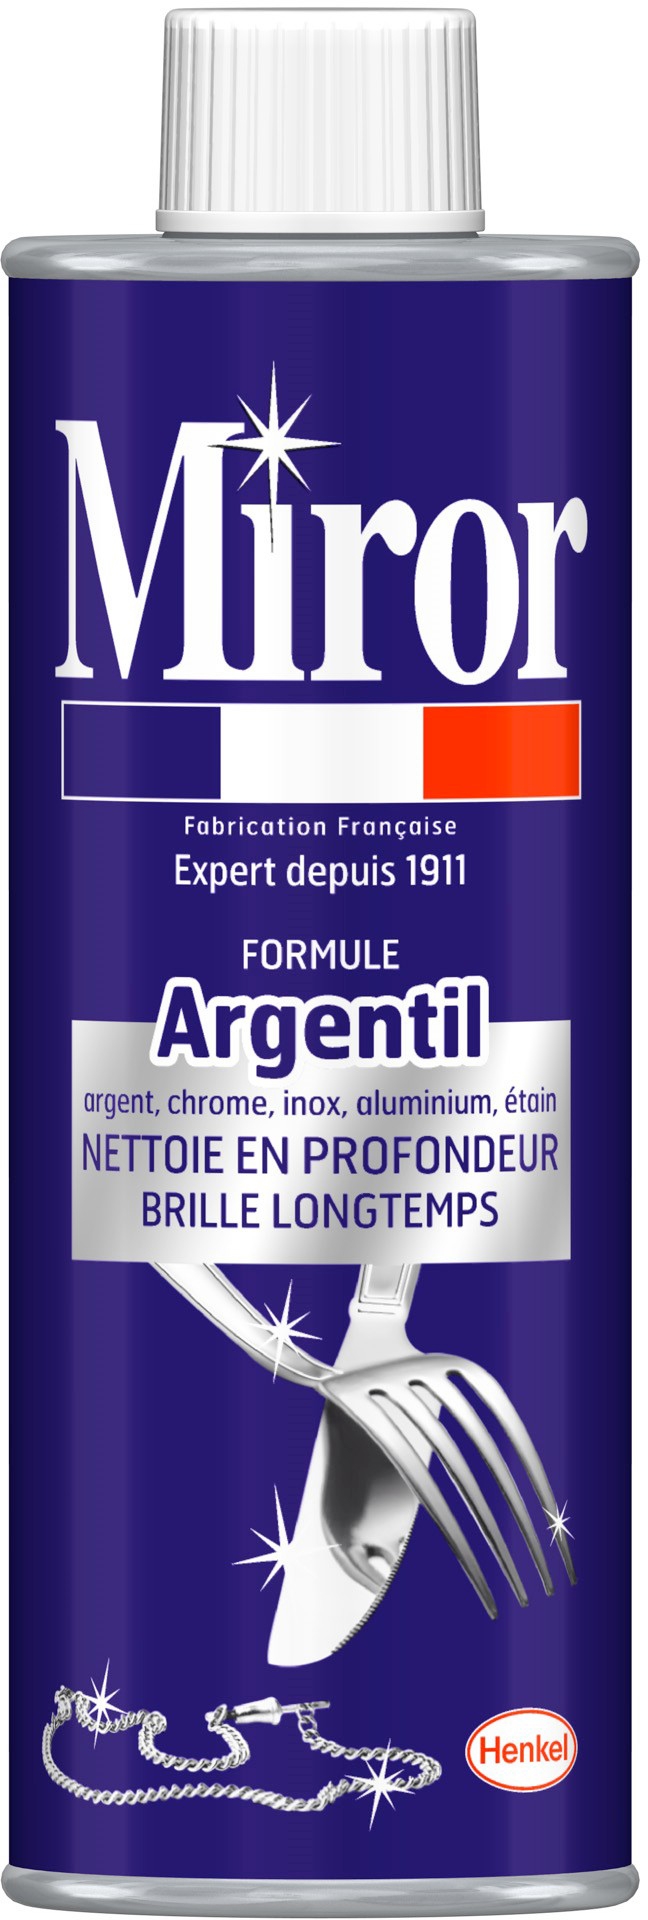 Argentil nettoyant argenterie chrome inox flacon de 250 ml